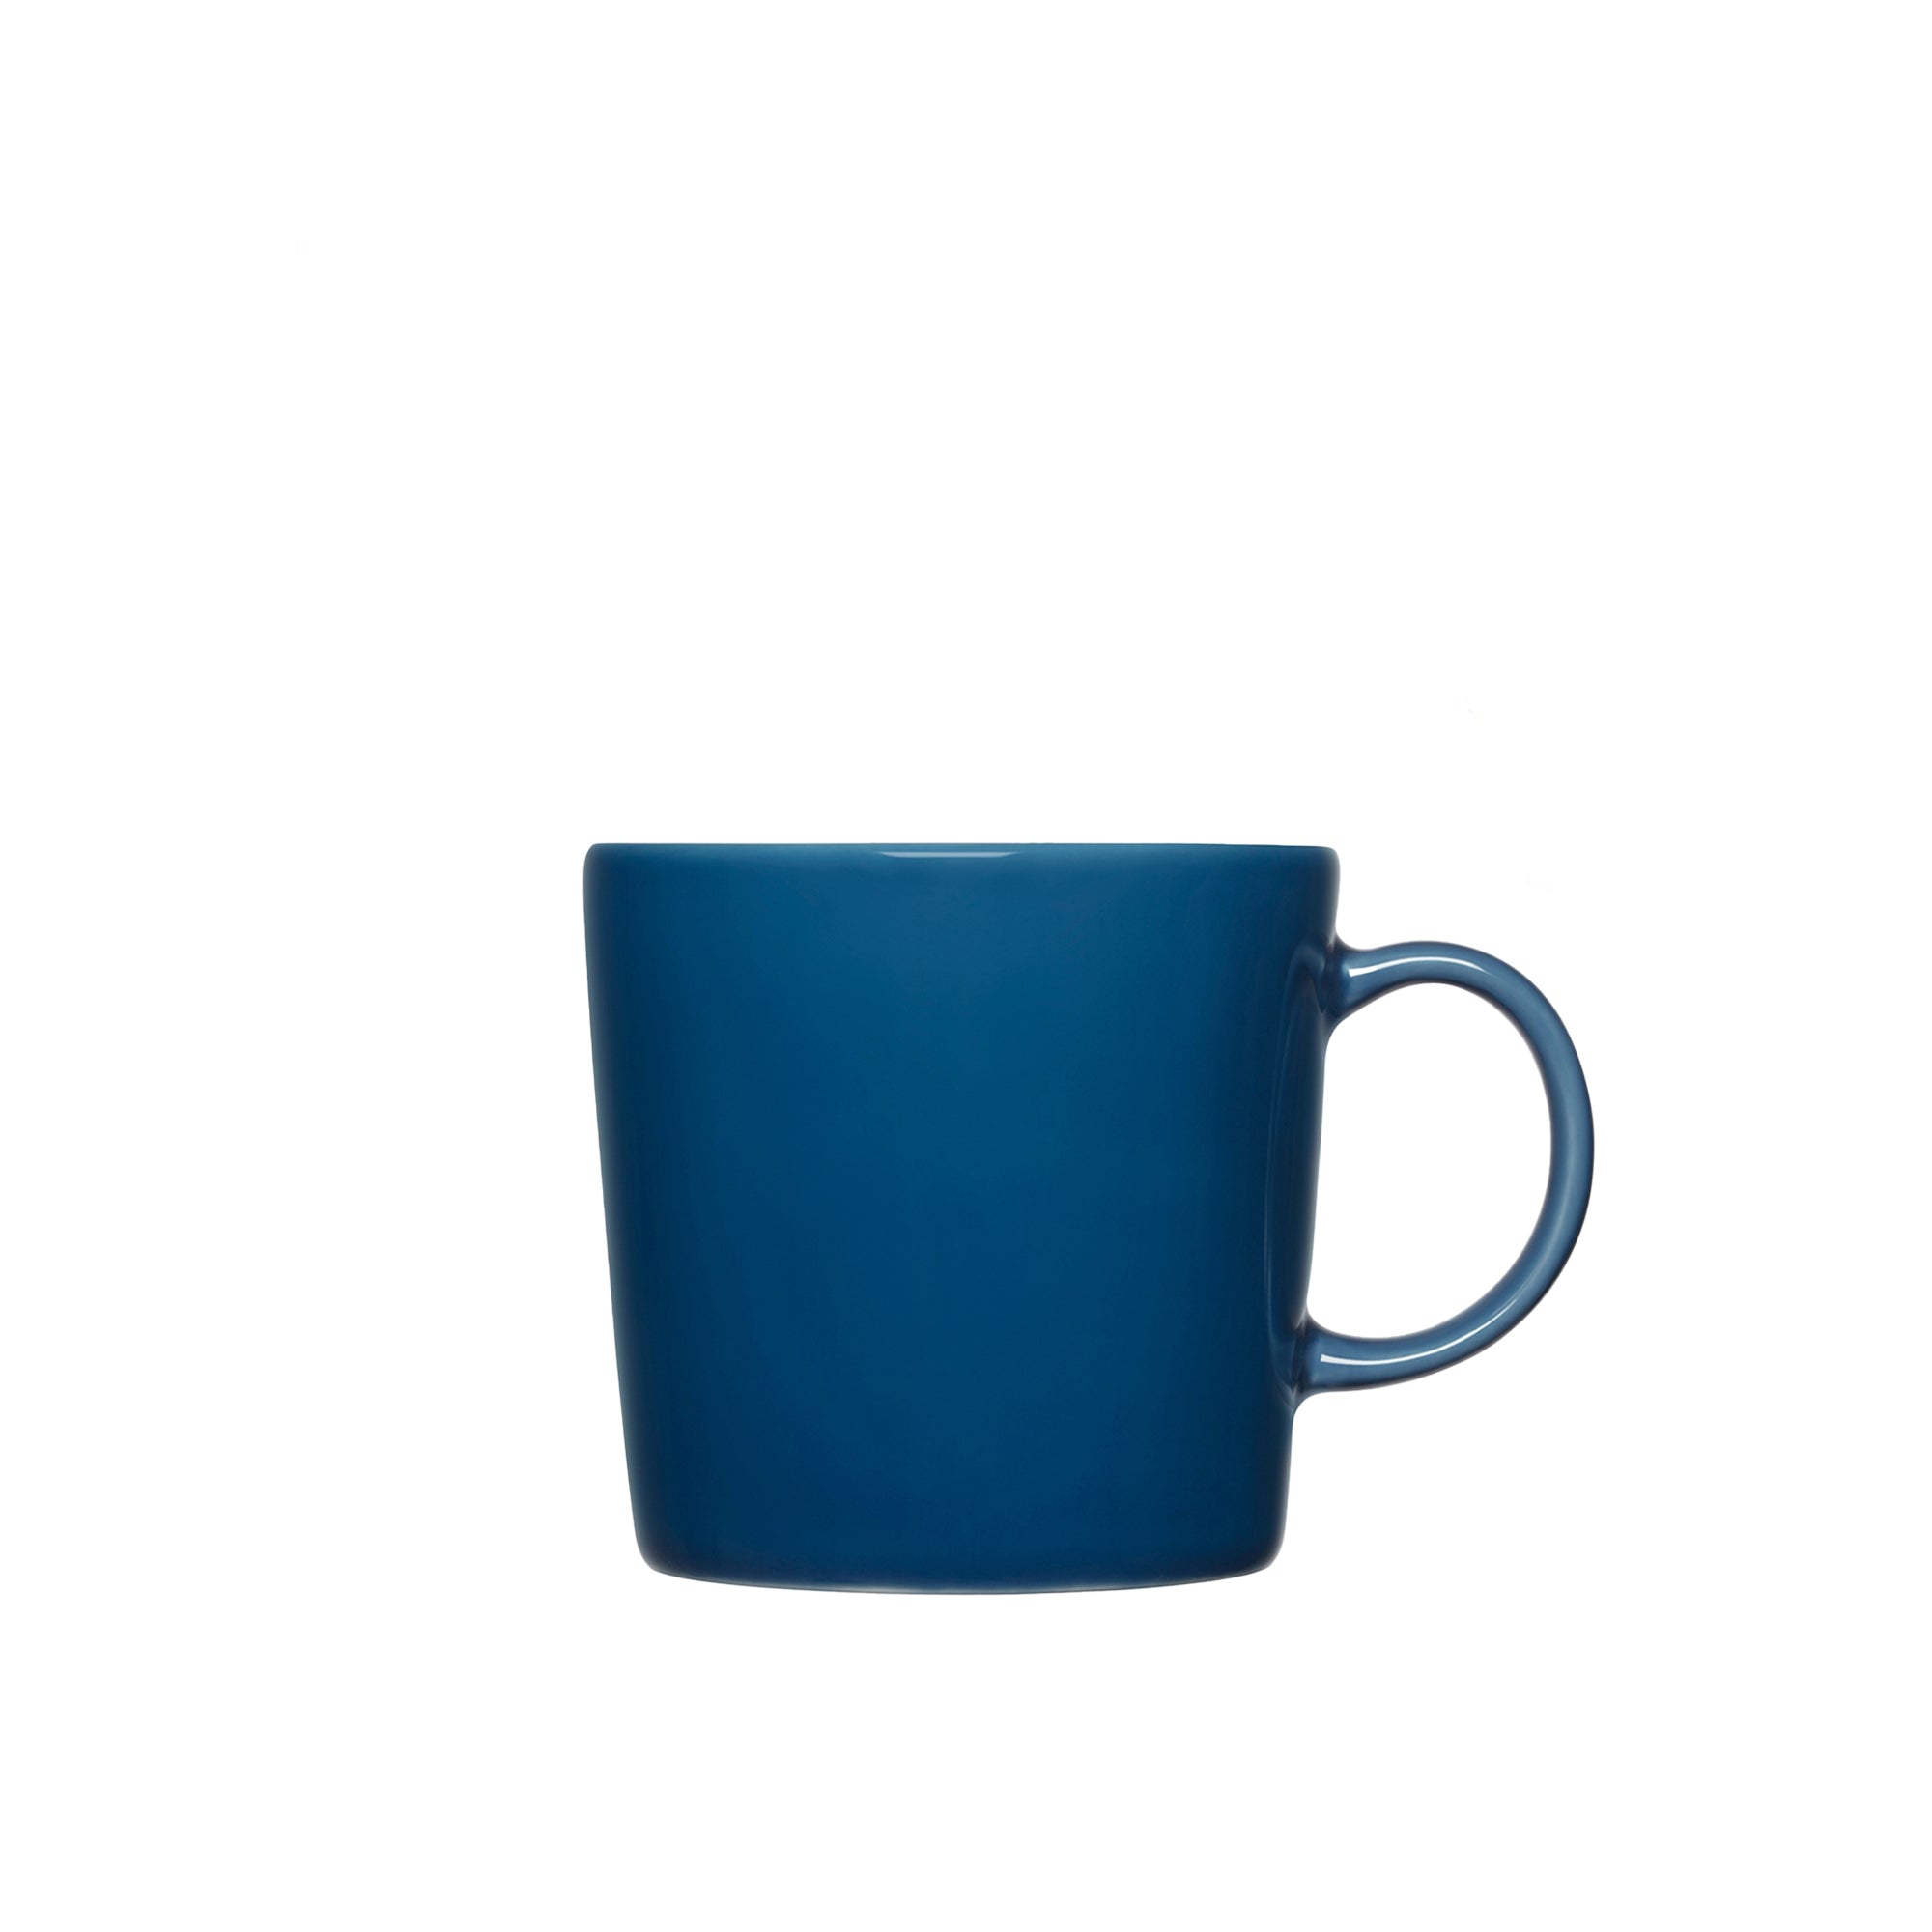 Teema Vintage Blue Mug, 13.5oz